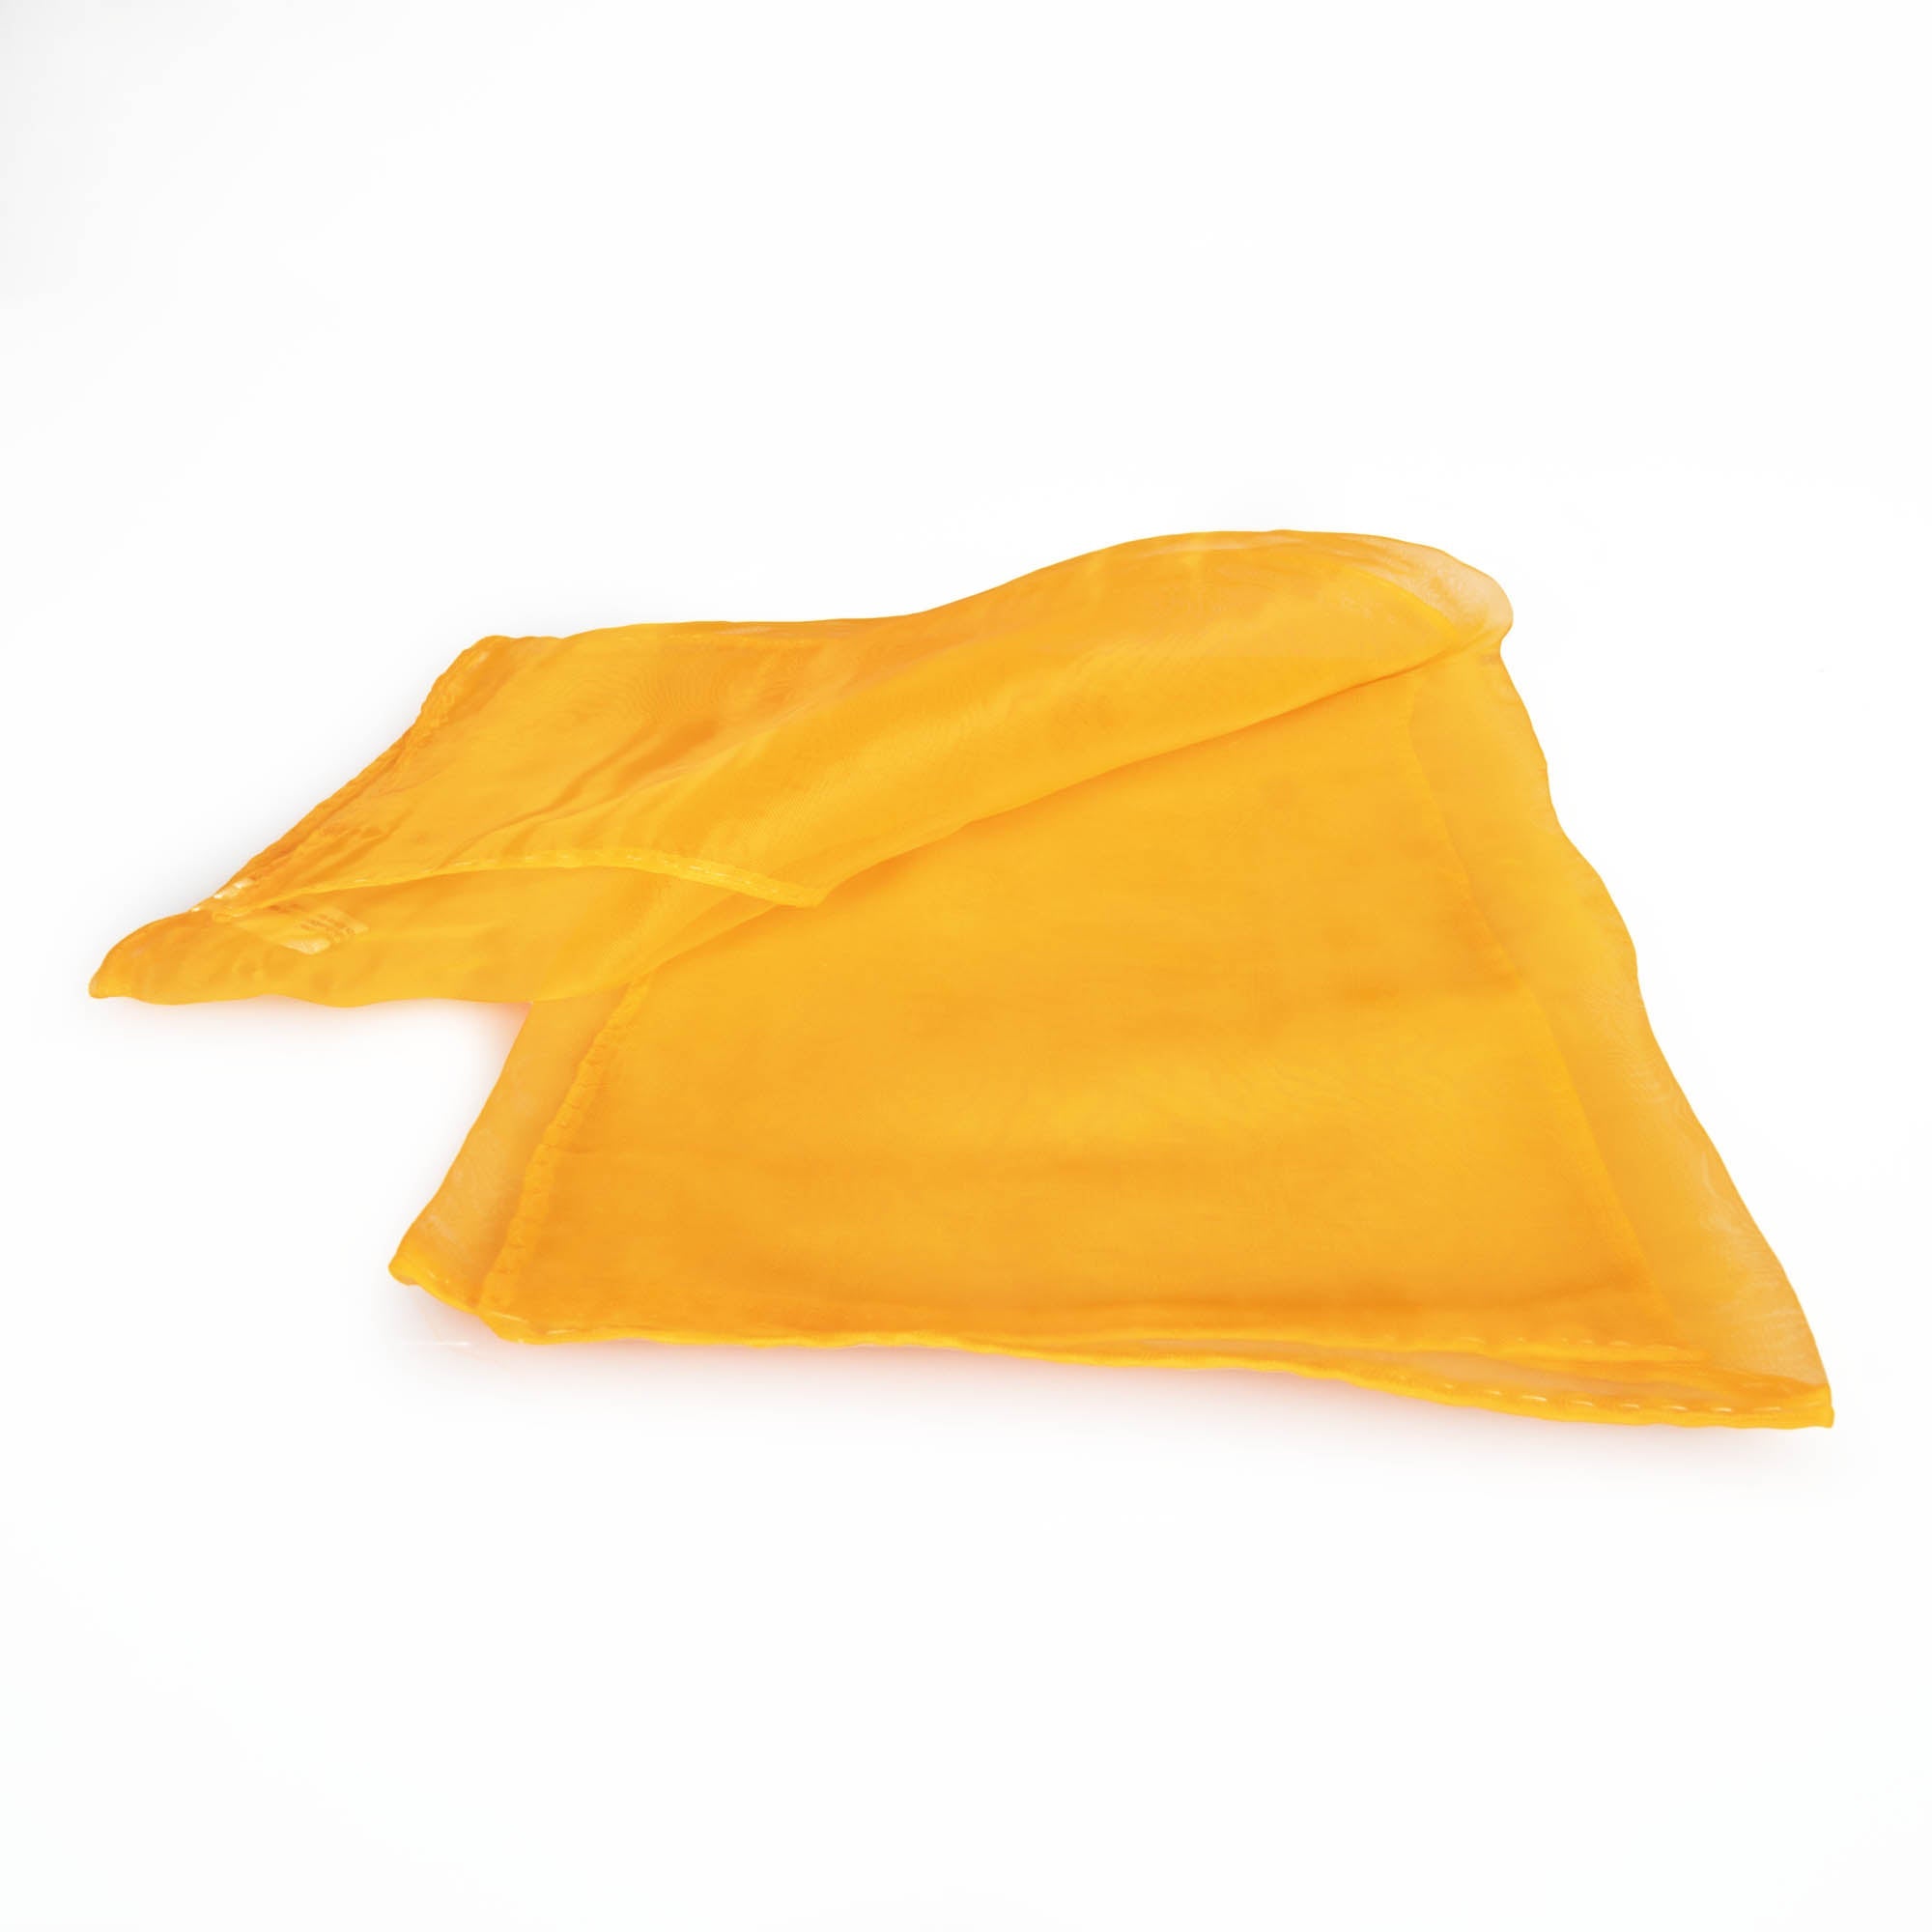 Orange juggling scarf folded over